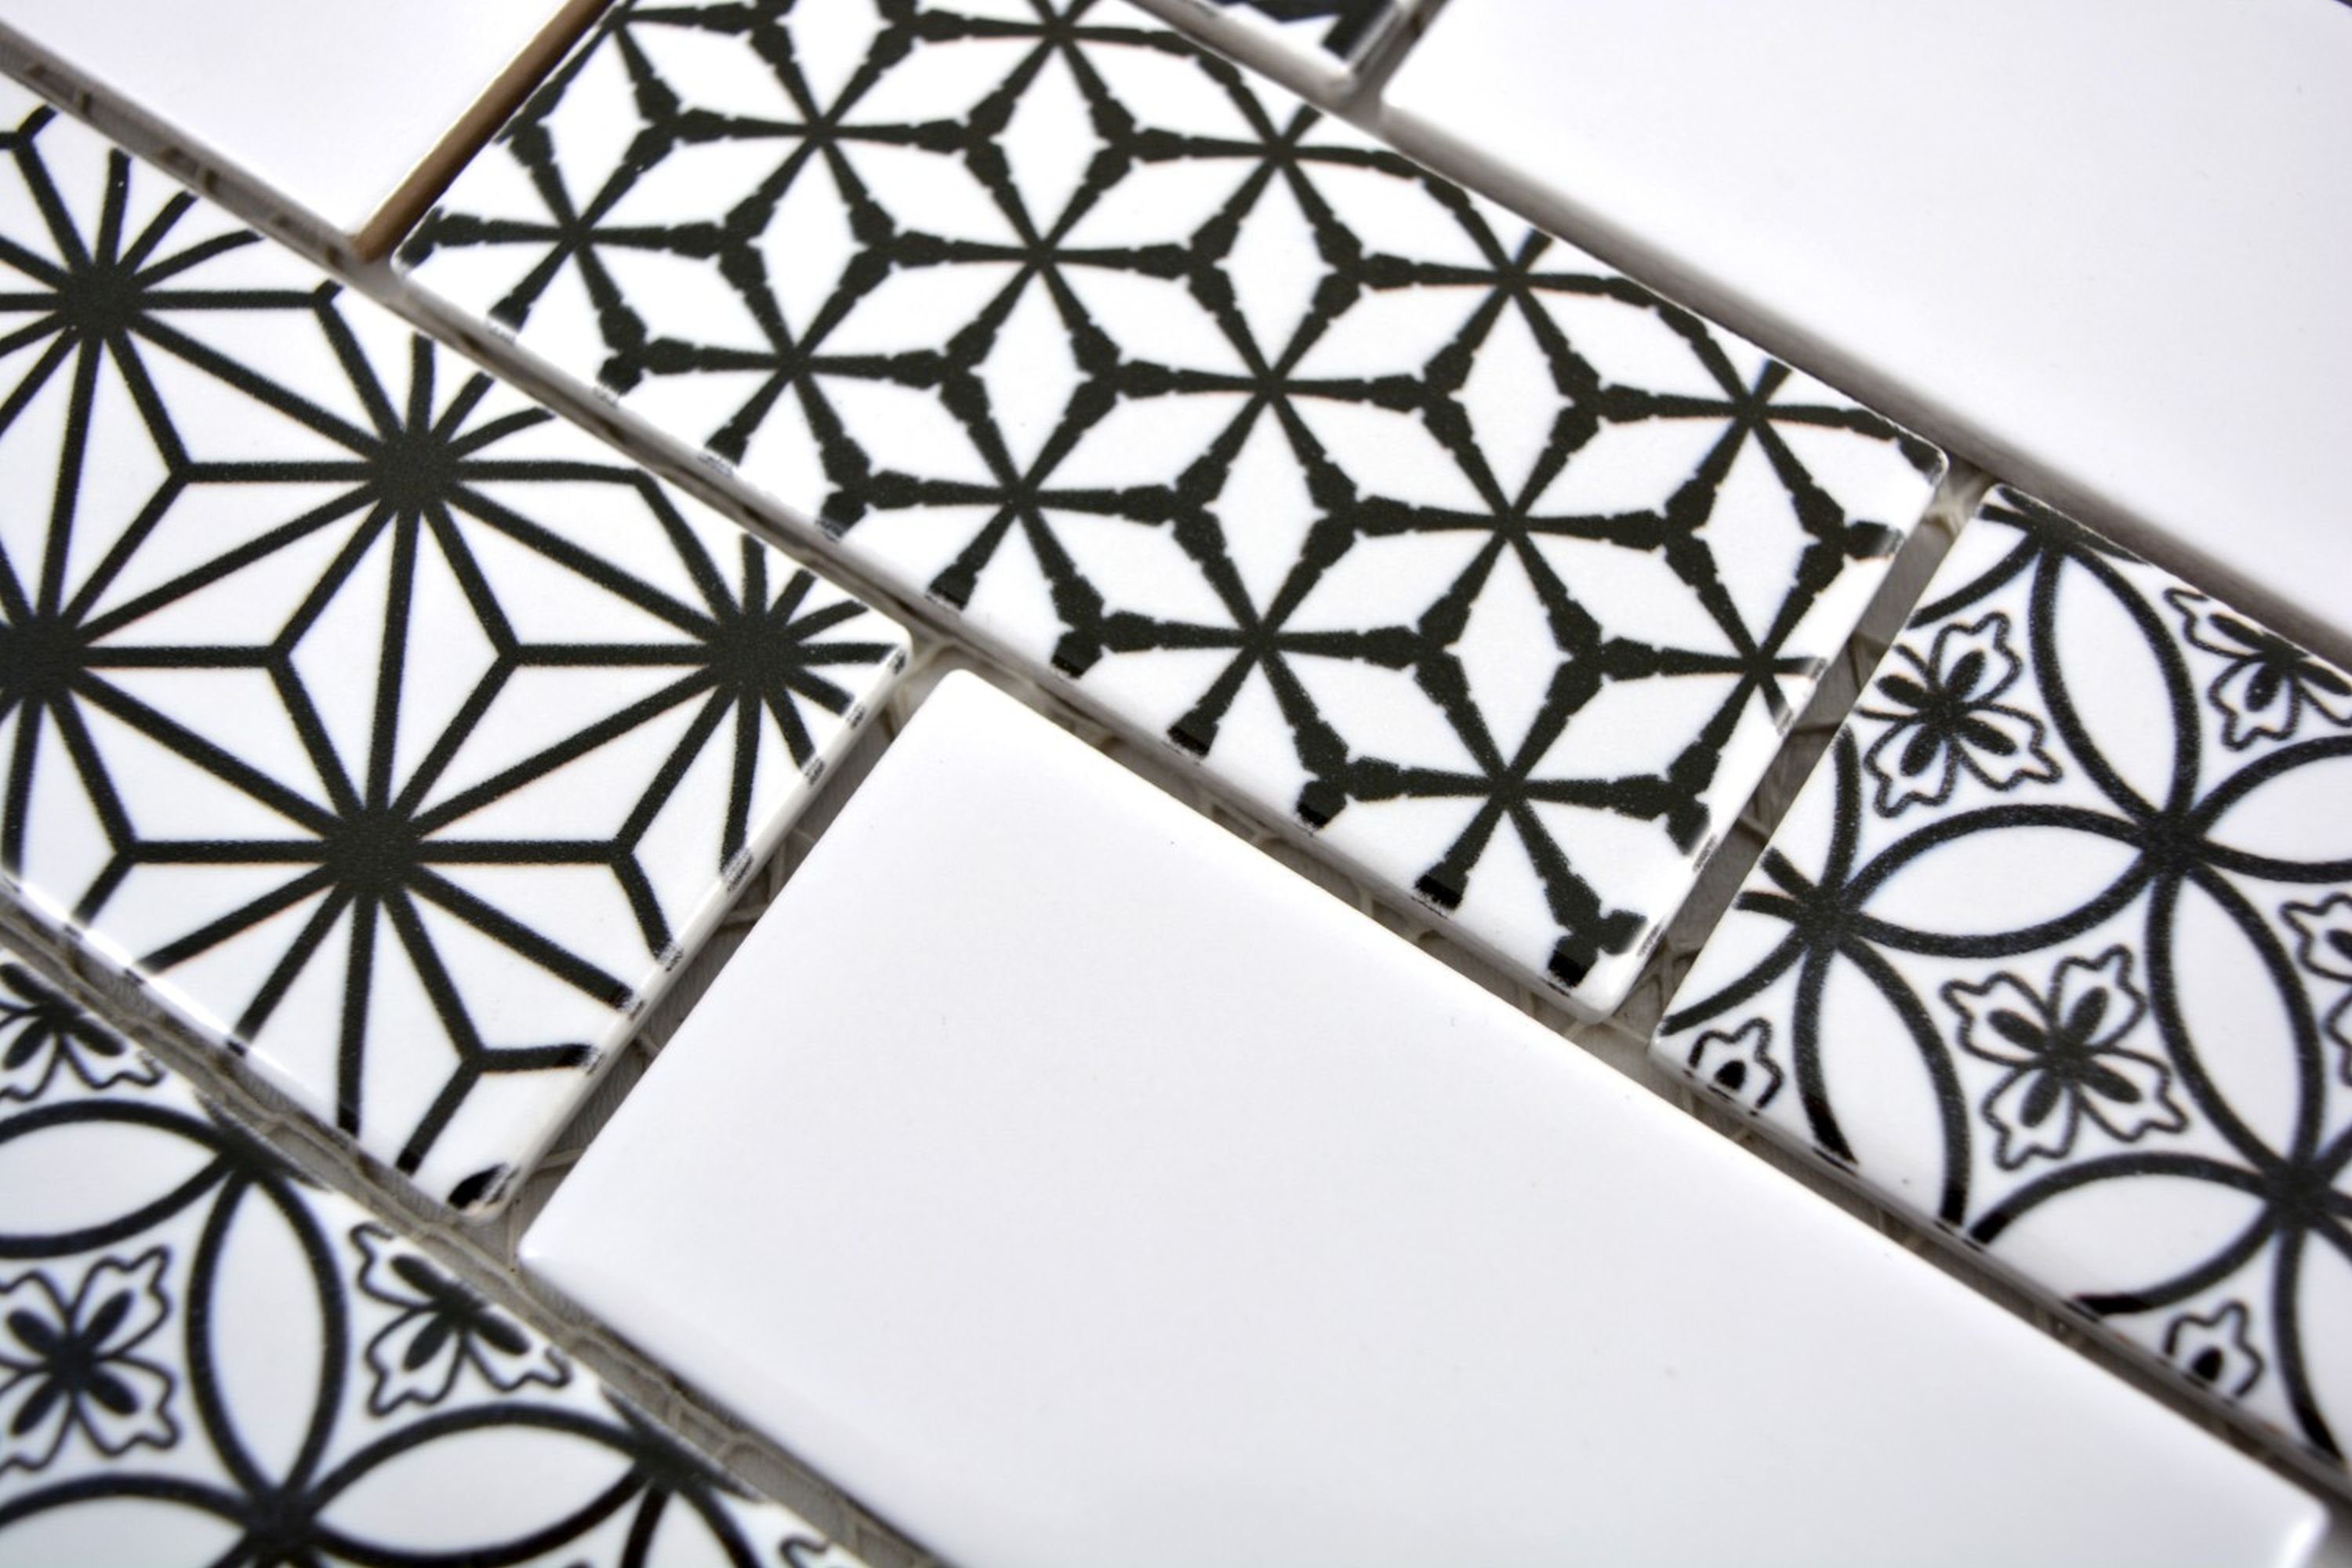 Mosani Mosaikfliesen Metro Grau Schwarz Facette glänzend Keramik Weiß Fliesen ohne